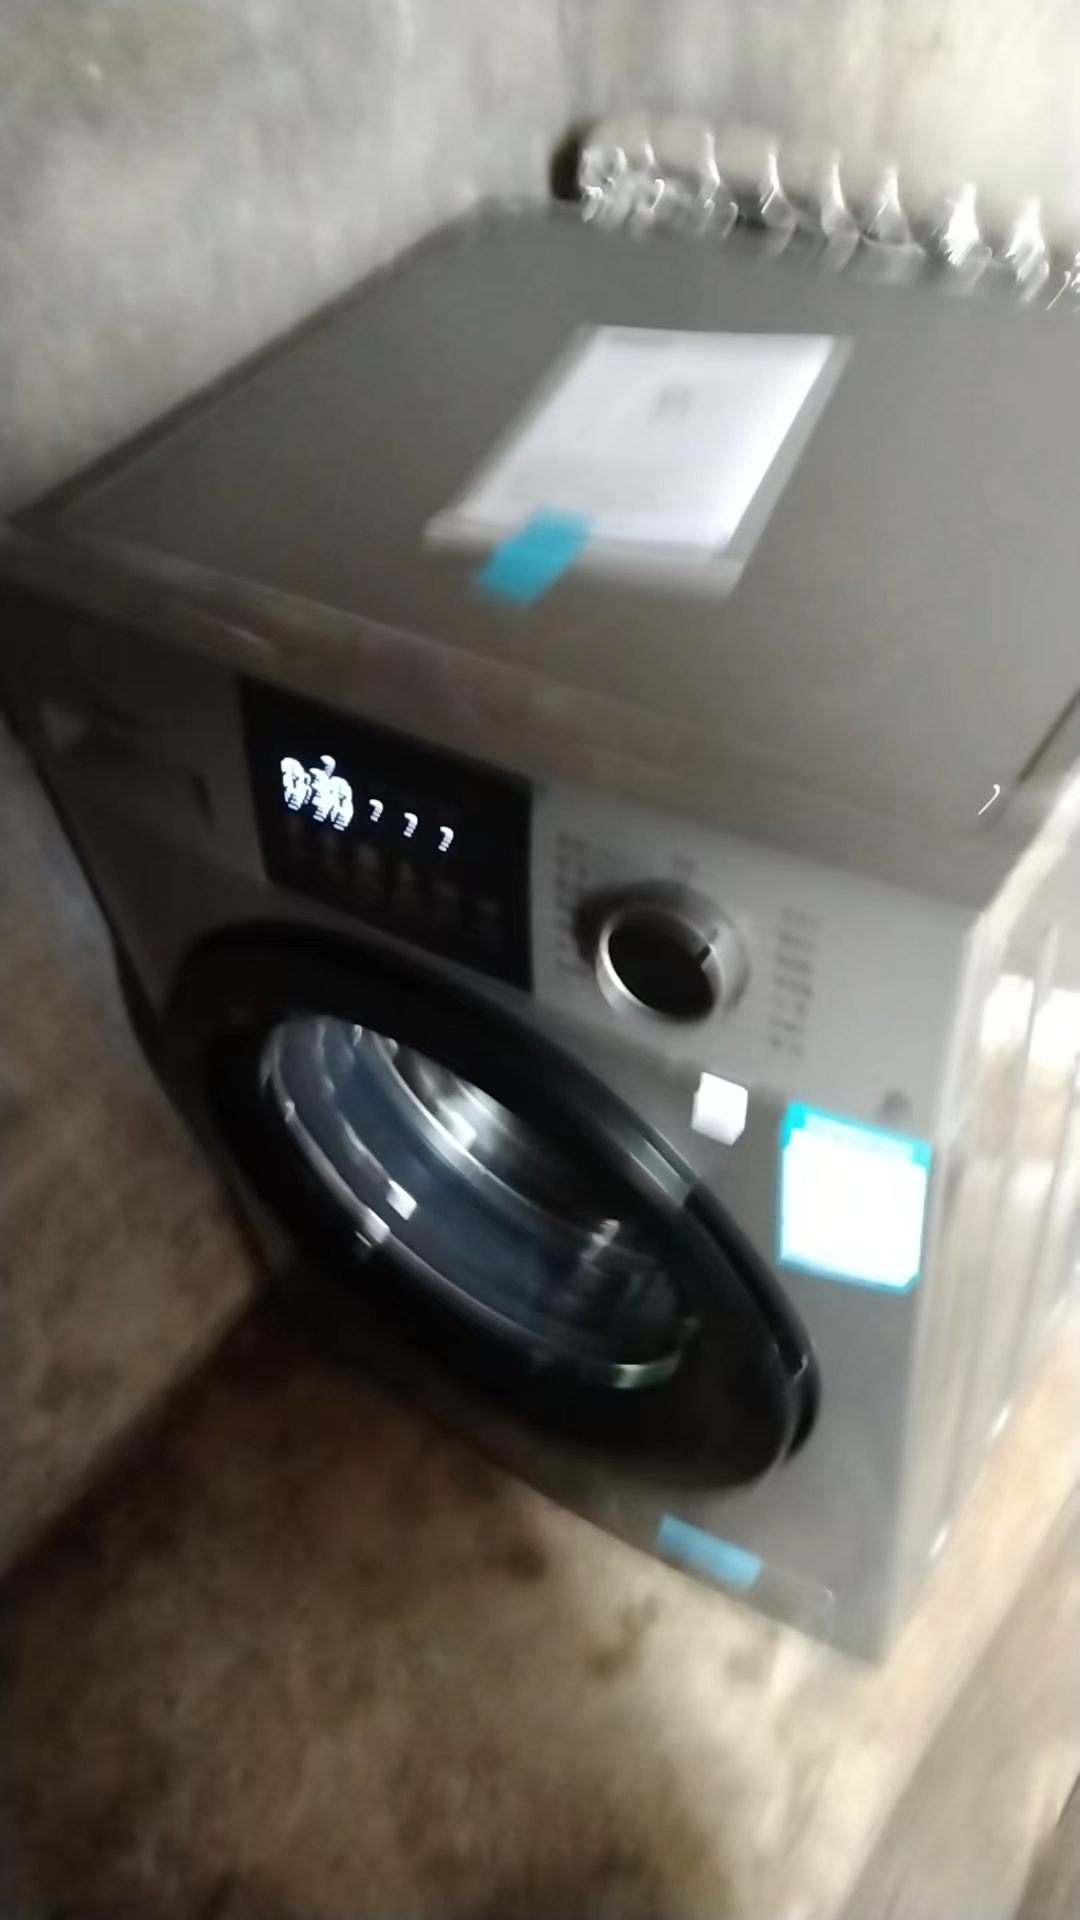 美的(Midea)超薄滚筒洗衣机全自动10公斤家用大容量 高温除菌除螨羽绒洗 变频智控wifi MG100VC133WY晒单图